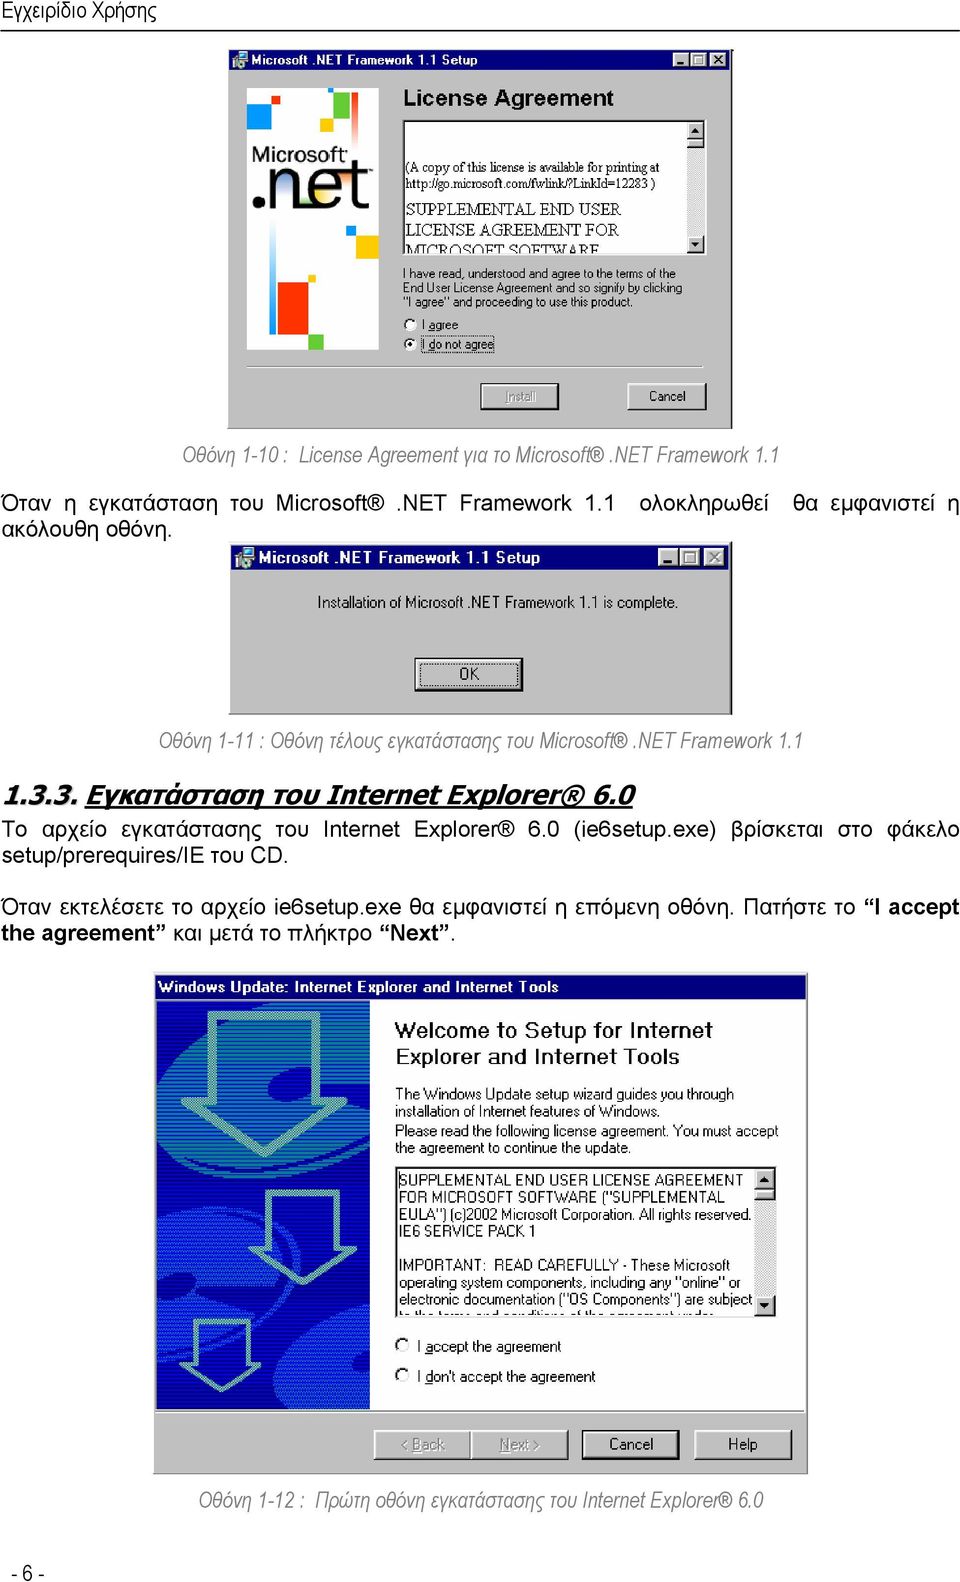 0 Το αρχείο εγκατάστασης του Internet Explorer 6.0 (ie6setup.exe) βρίσκεται στο φάκελο setup/prerequires/ie του CD.